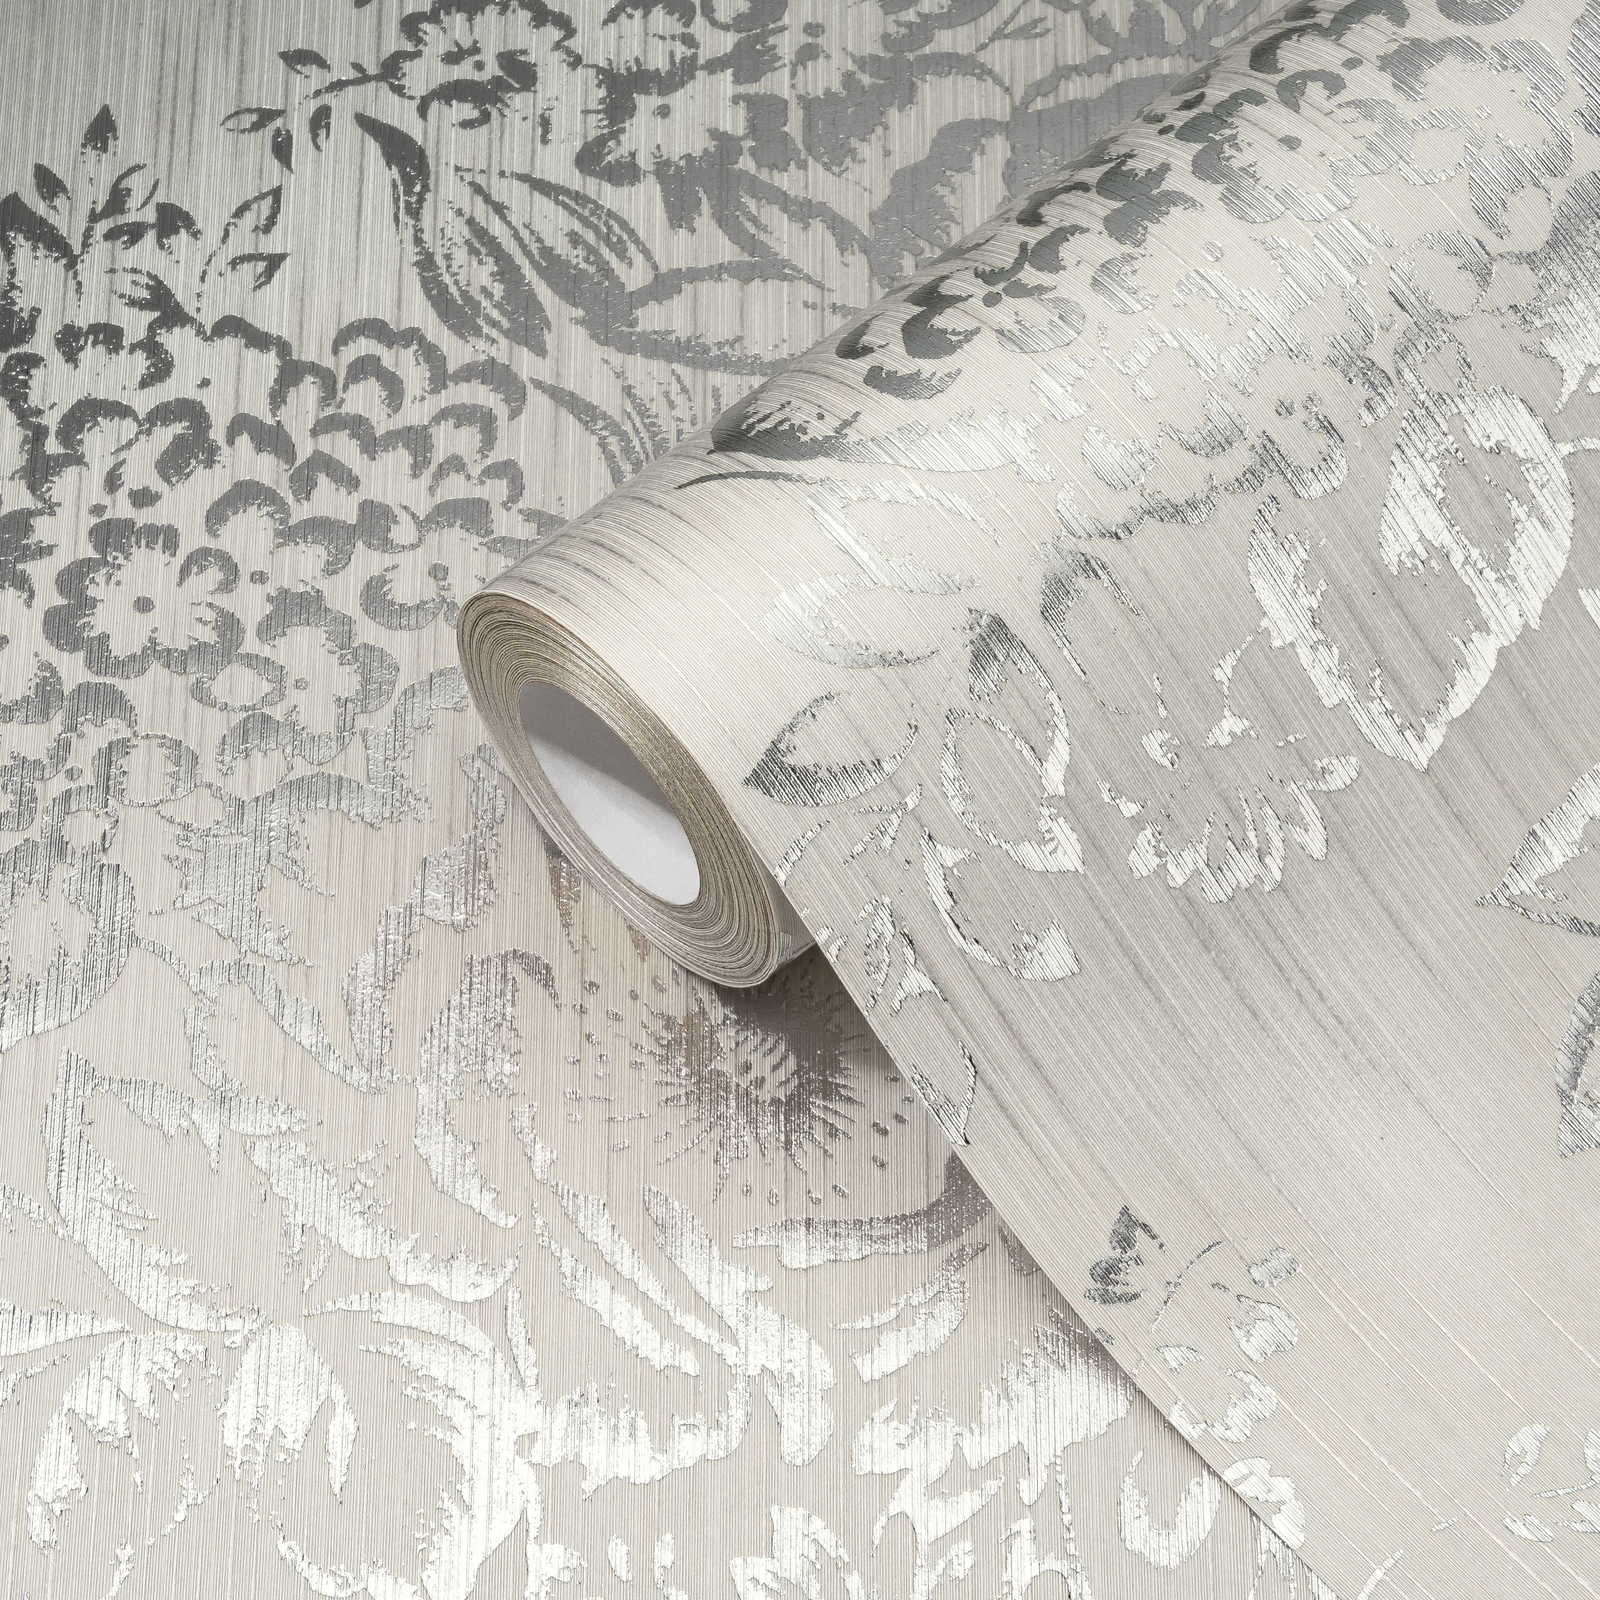             Papier peint structuré avec motif floral argenté - argent, gris
        